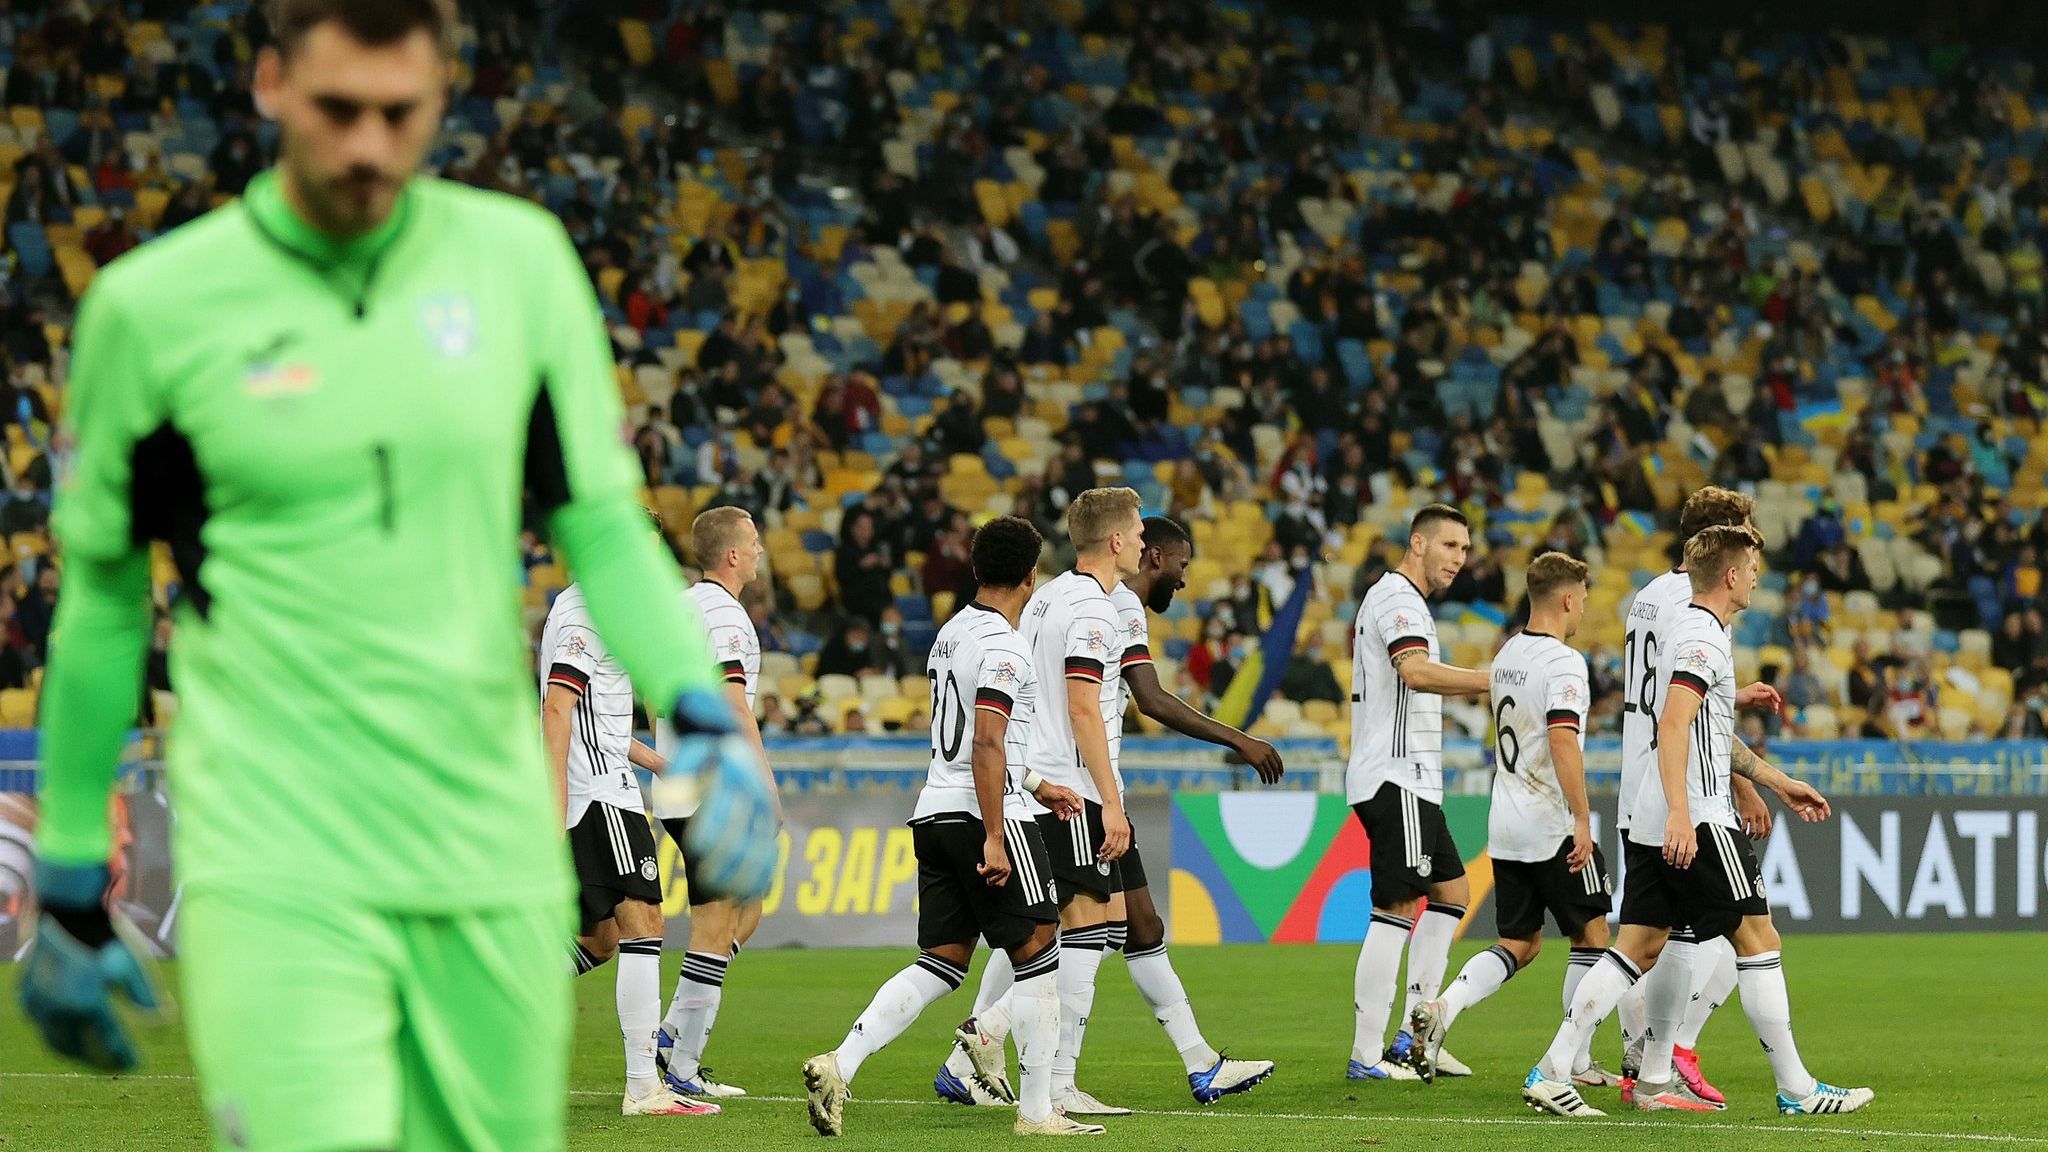 Лига наций: Германия – Украина – где смотреть онлайн матч 14.11.2020